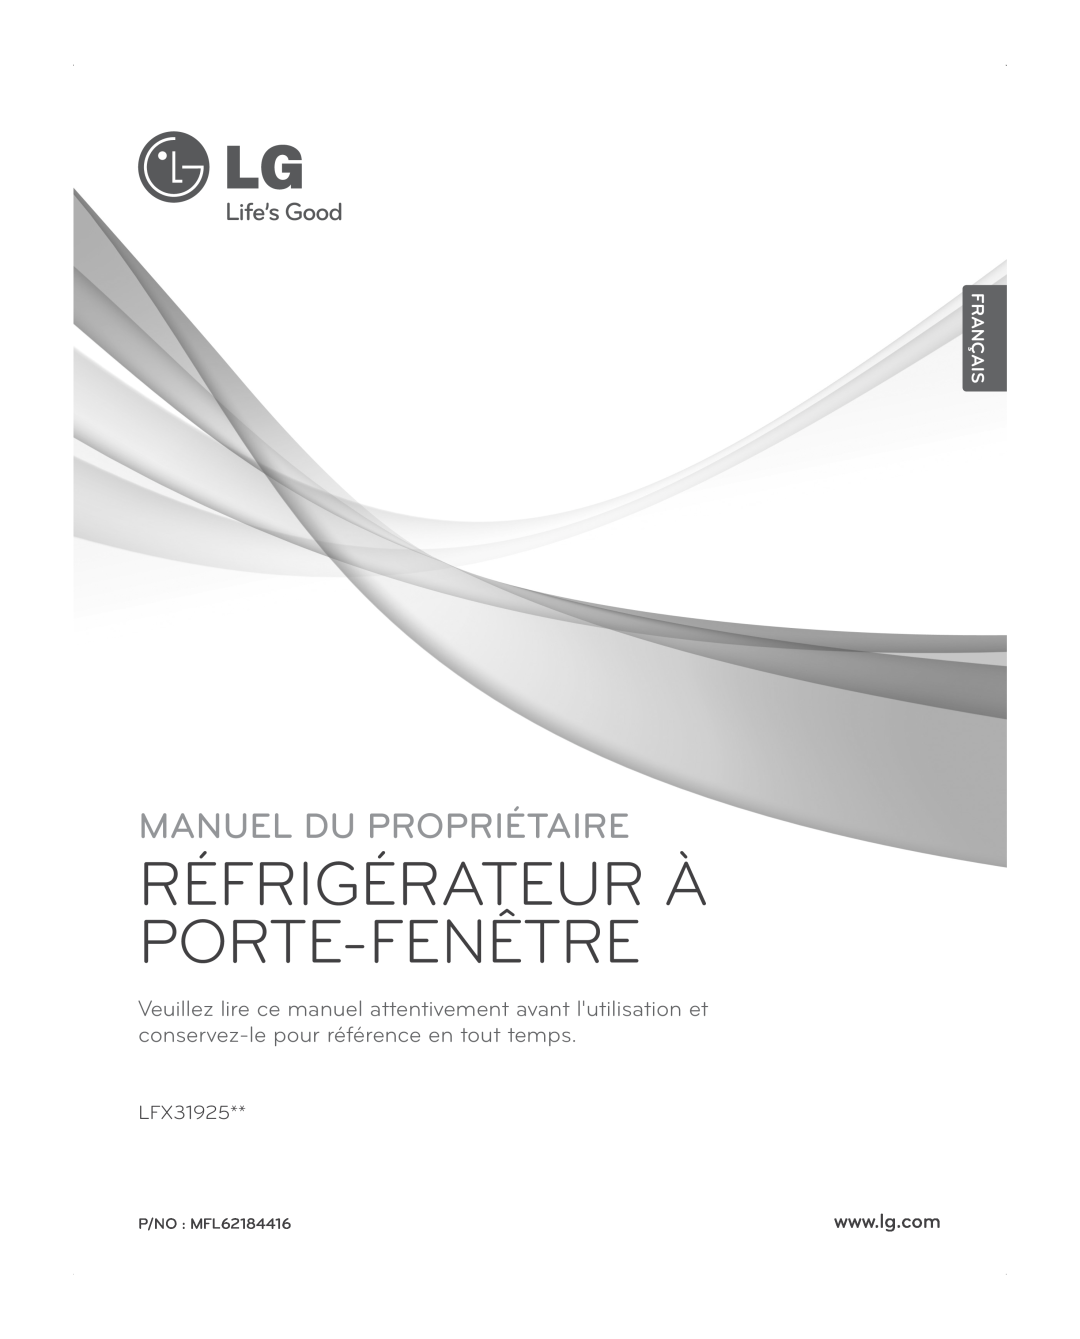 LG Electronics LFX31945ST Français, Réfrigérateur À Porte-Fenêtre, Manuel Du Propriétaire, LFX31925, P/NO MFL62184416 